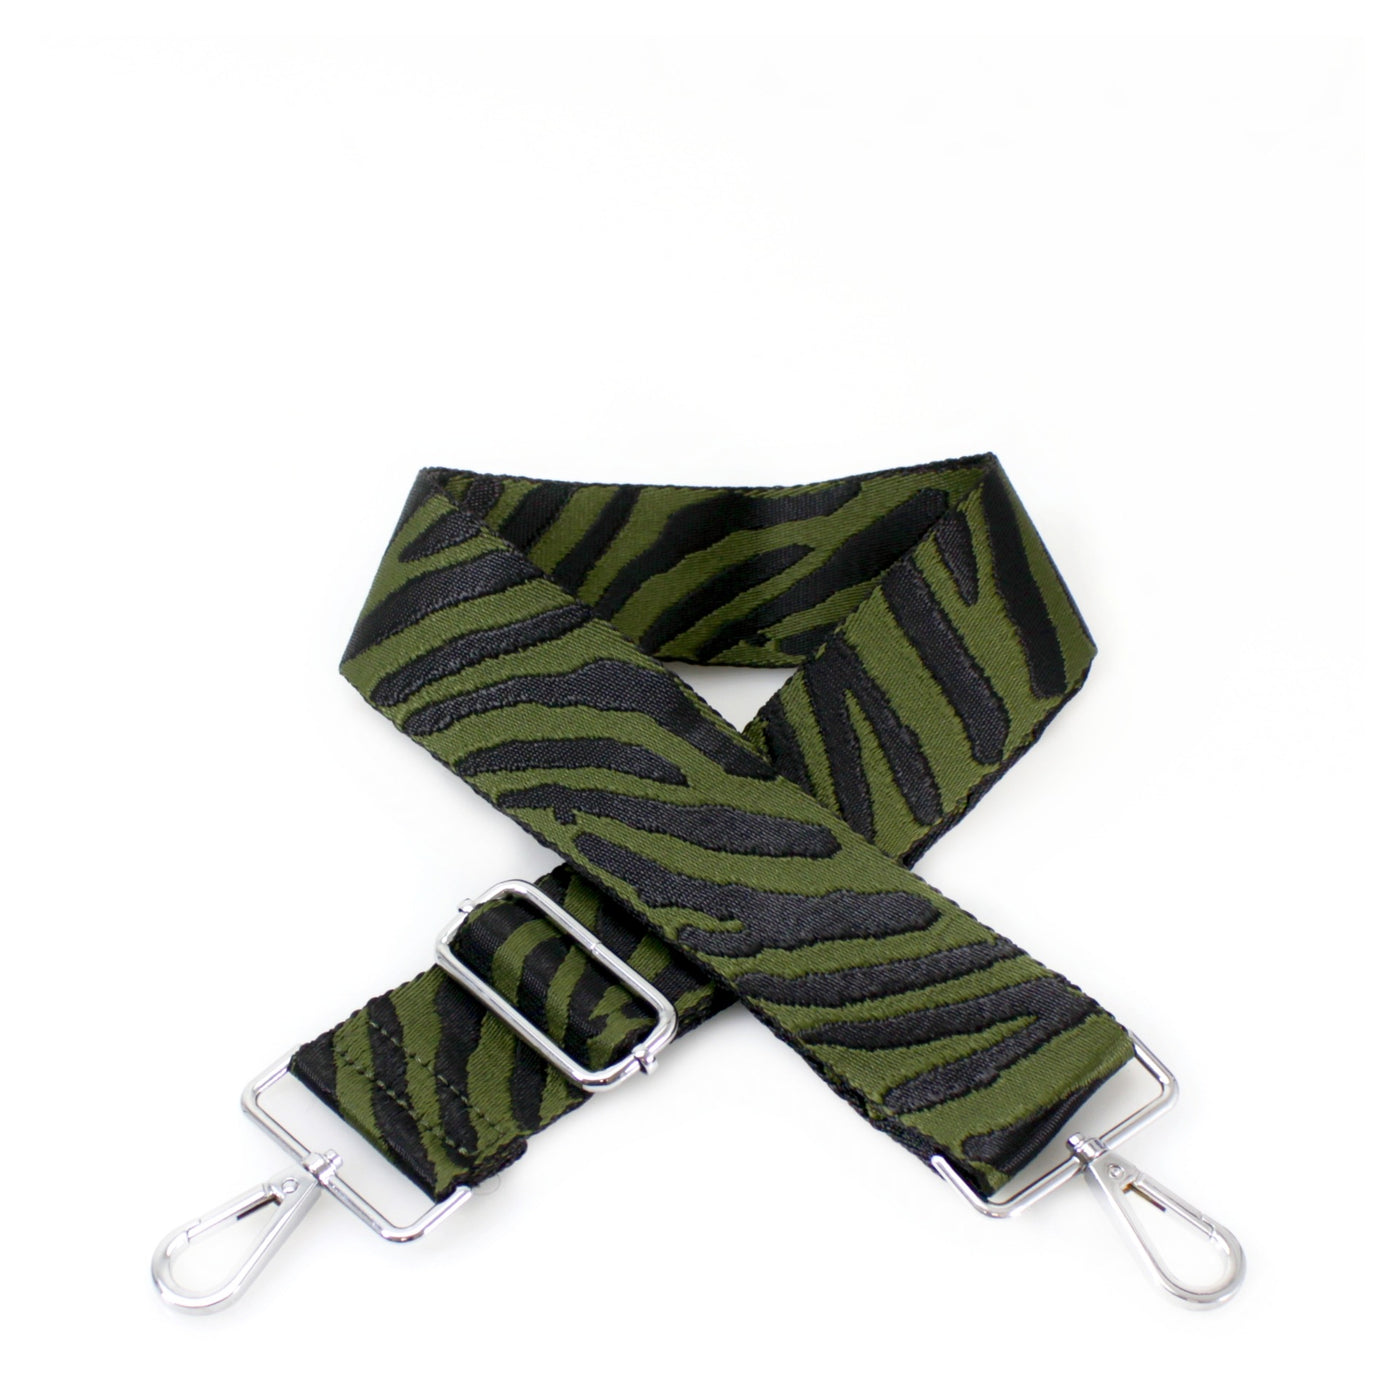 Khaki & Black Zebra Print Bag Strap - Silver Fittings